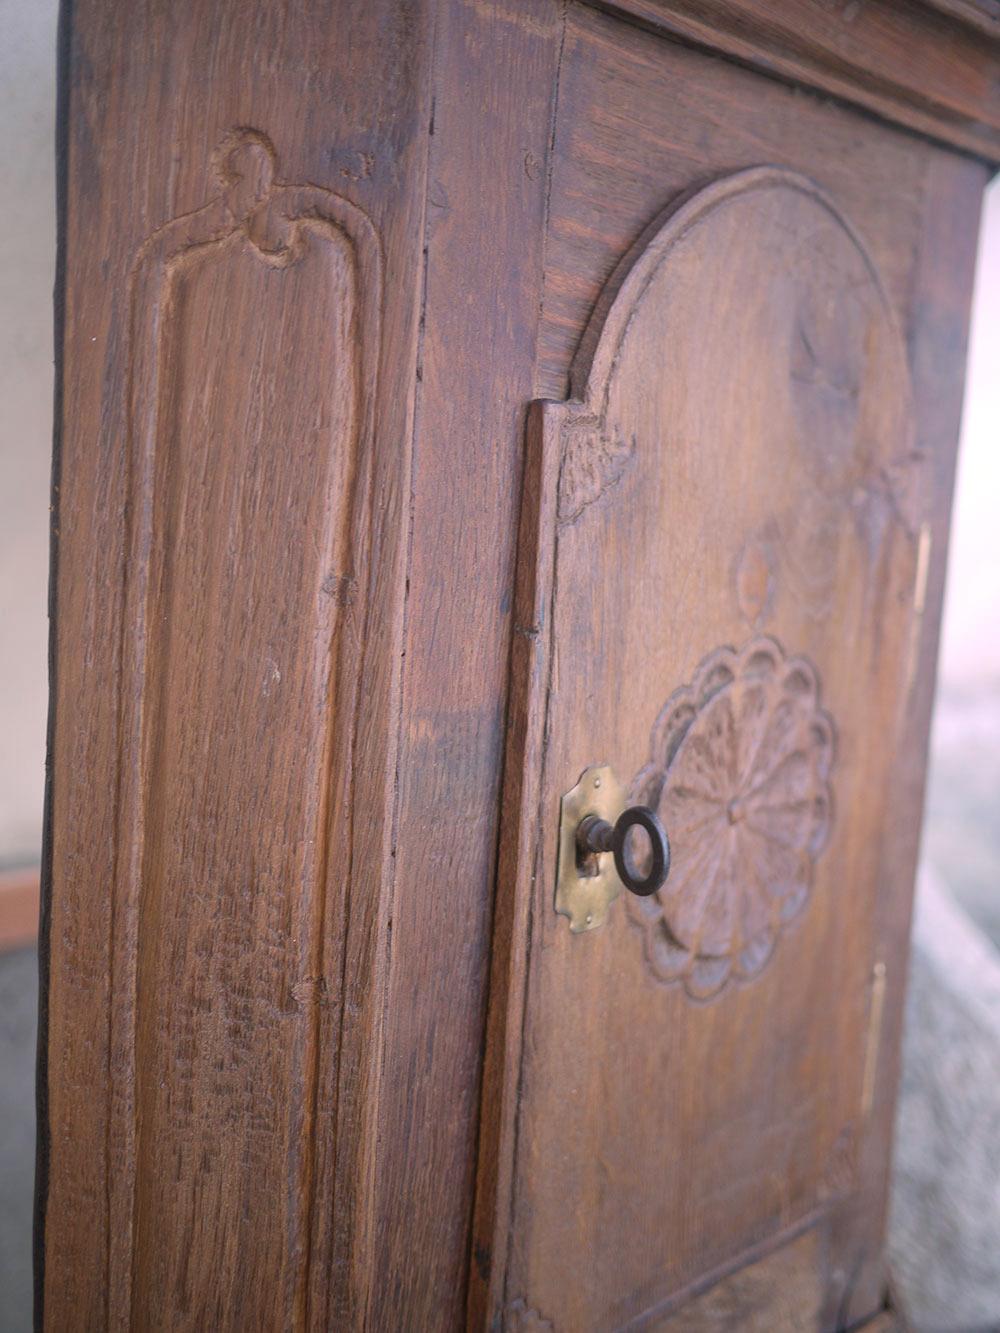 Armoire suspendue angulaire de 1700 en chêne

Mesures : H.78 - L. 48 - P. 28

Armoire particulière entièrement construite en bois de chêne, avec une porte d'angle.
Une rosace est sculptée sur la porte, et toute la partie inférieure est